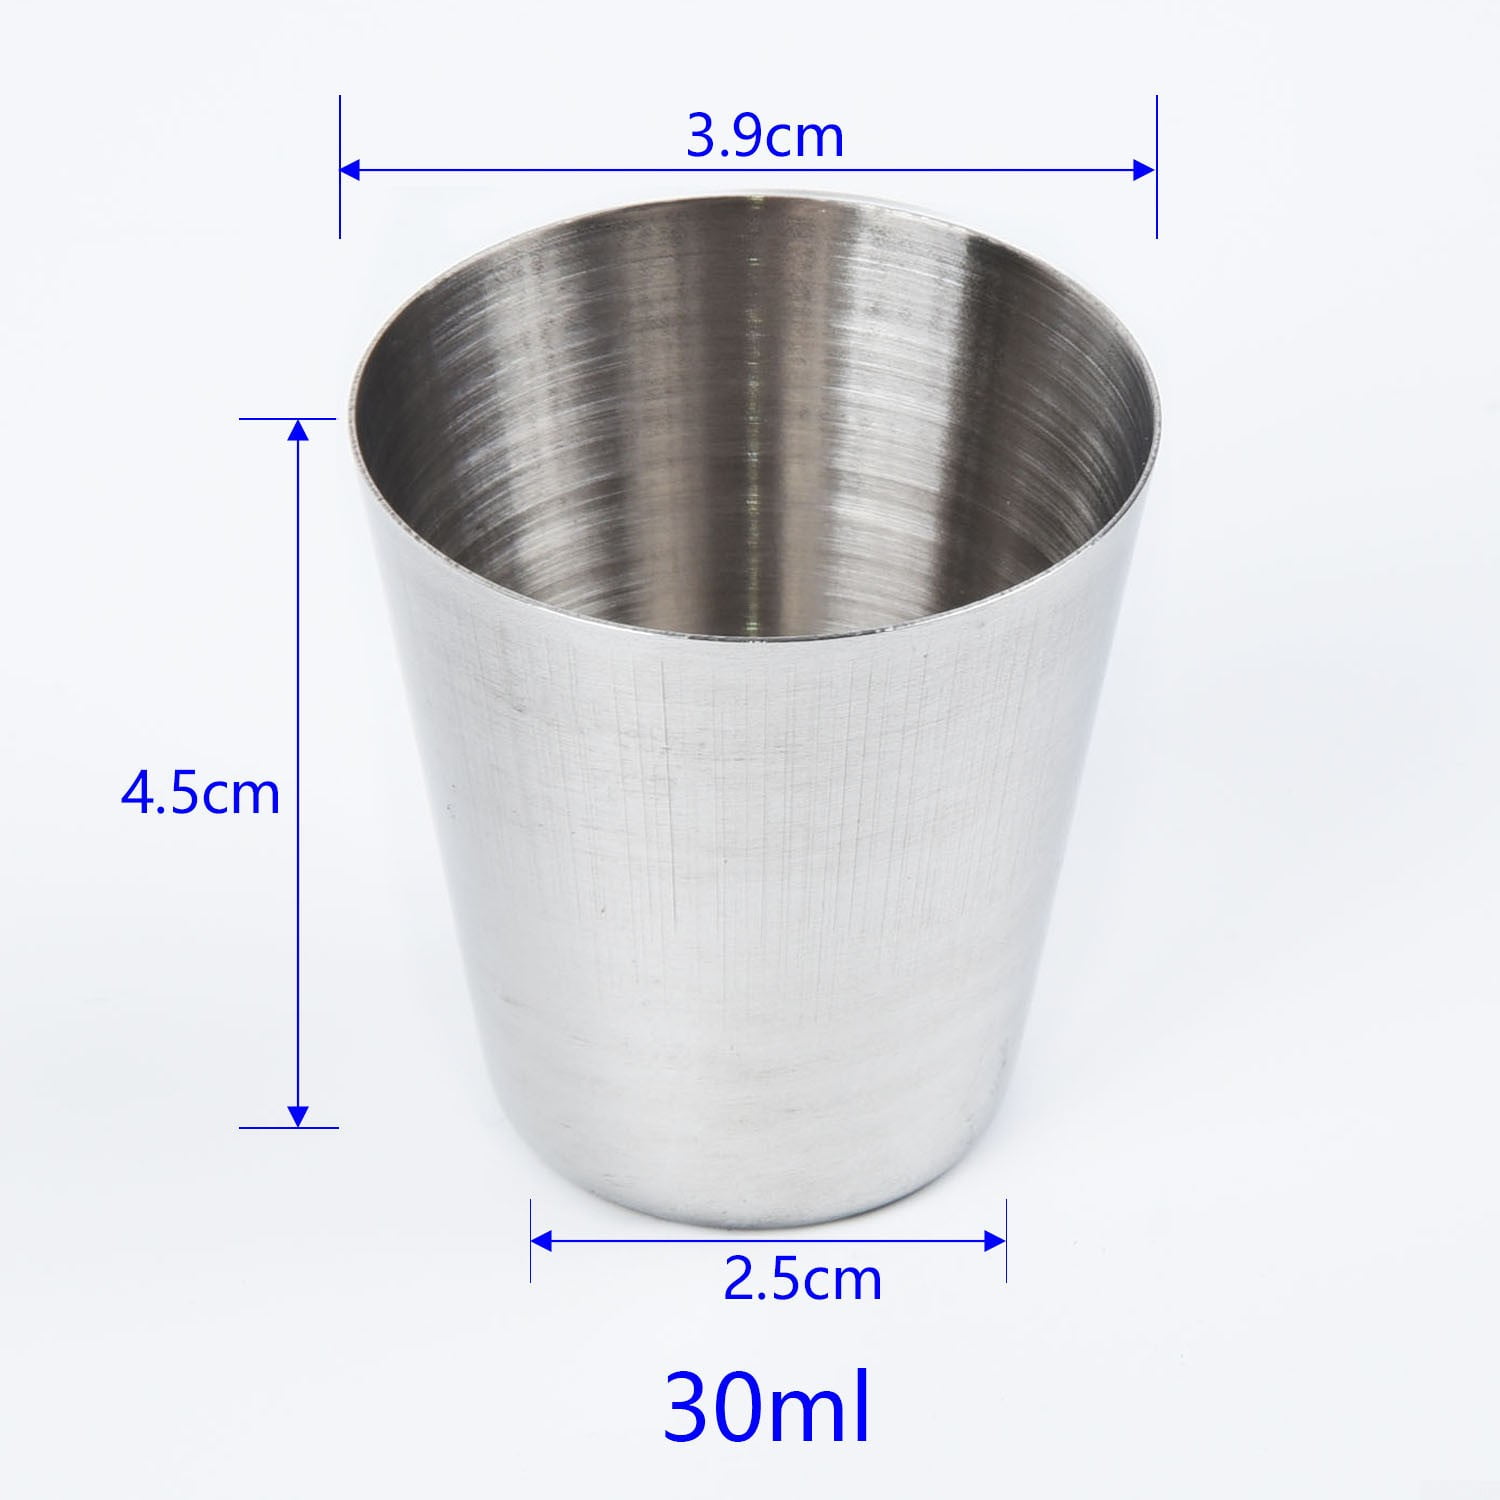 6~12 Pcs1oz/30ml Metal Stainless Steel Cup Mug Drink Coffee Beer Tumbler Travel 